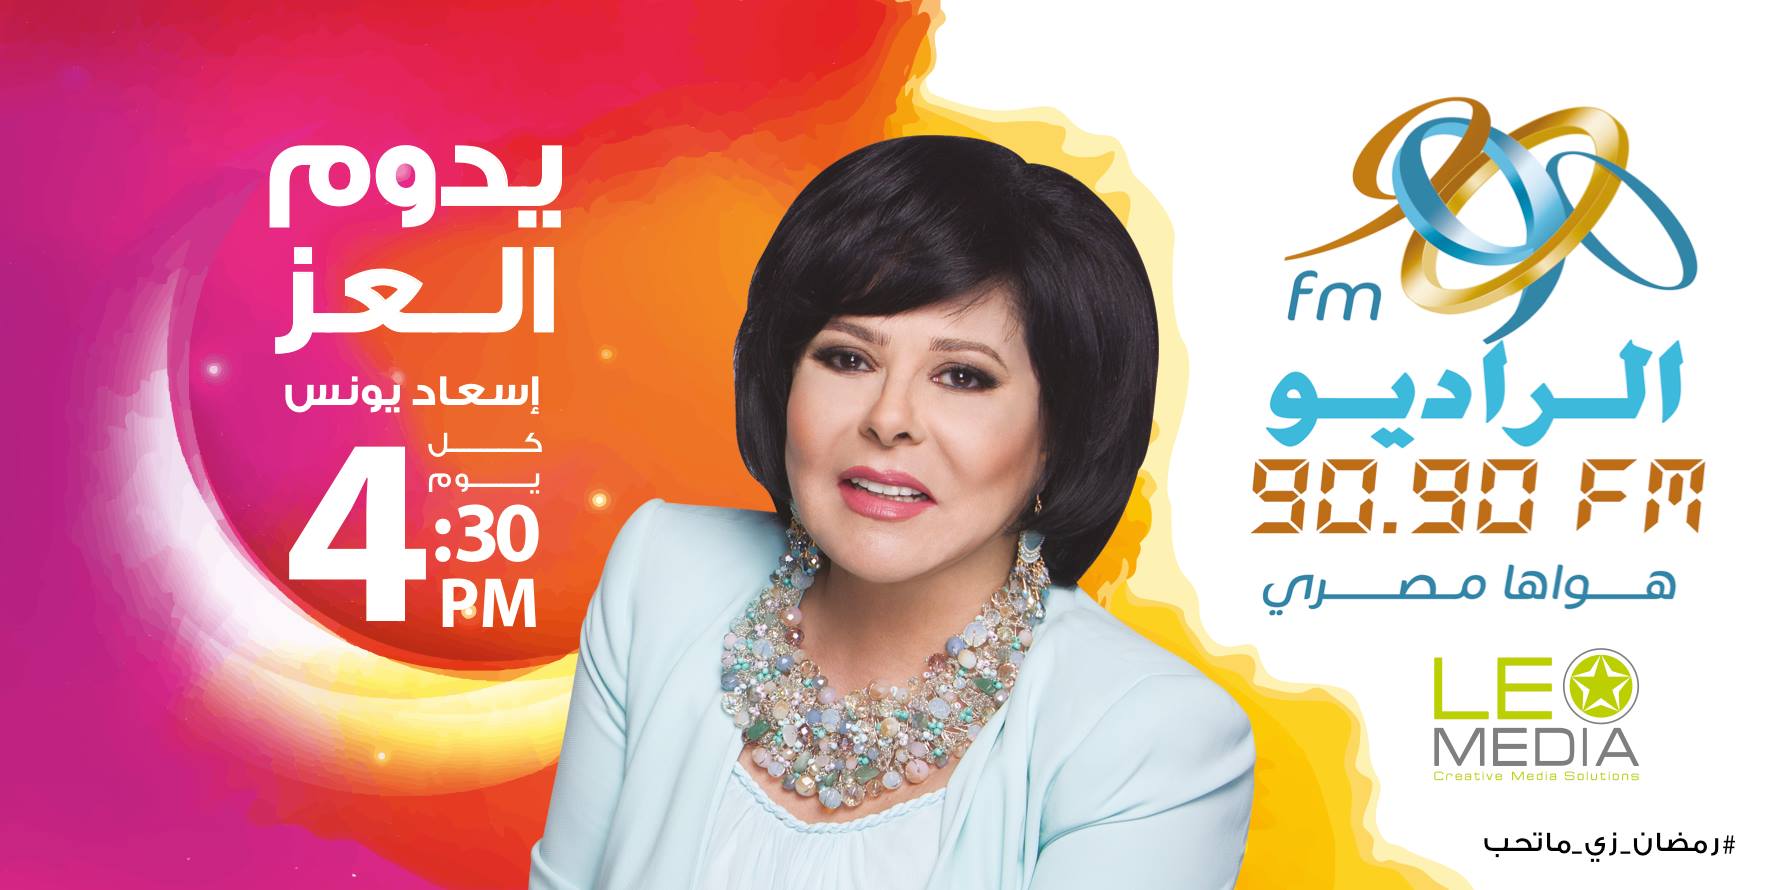 إسعاد يونس تقدم برنامج "يدوم العز "الإذاعي في رمضان 2017